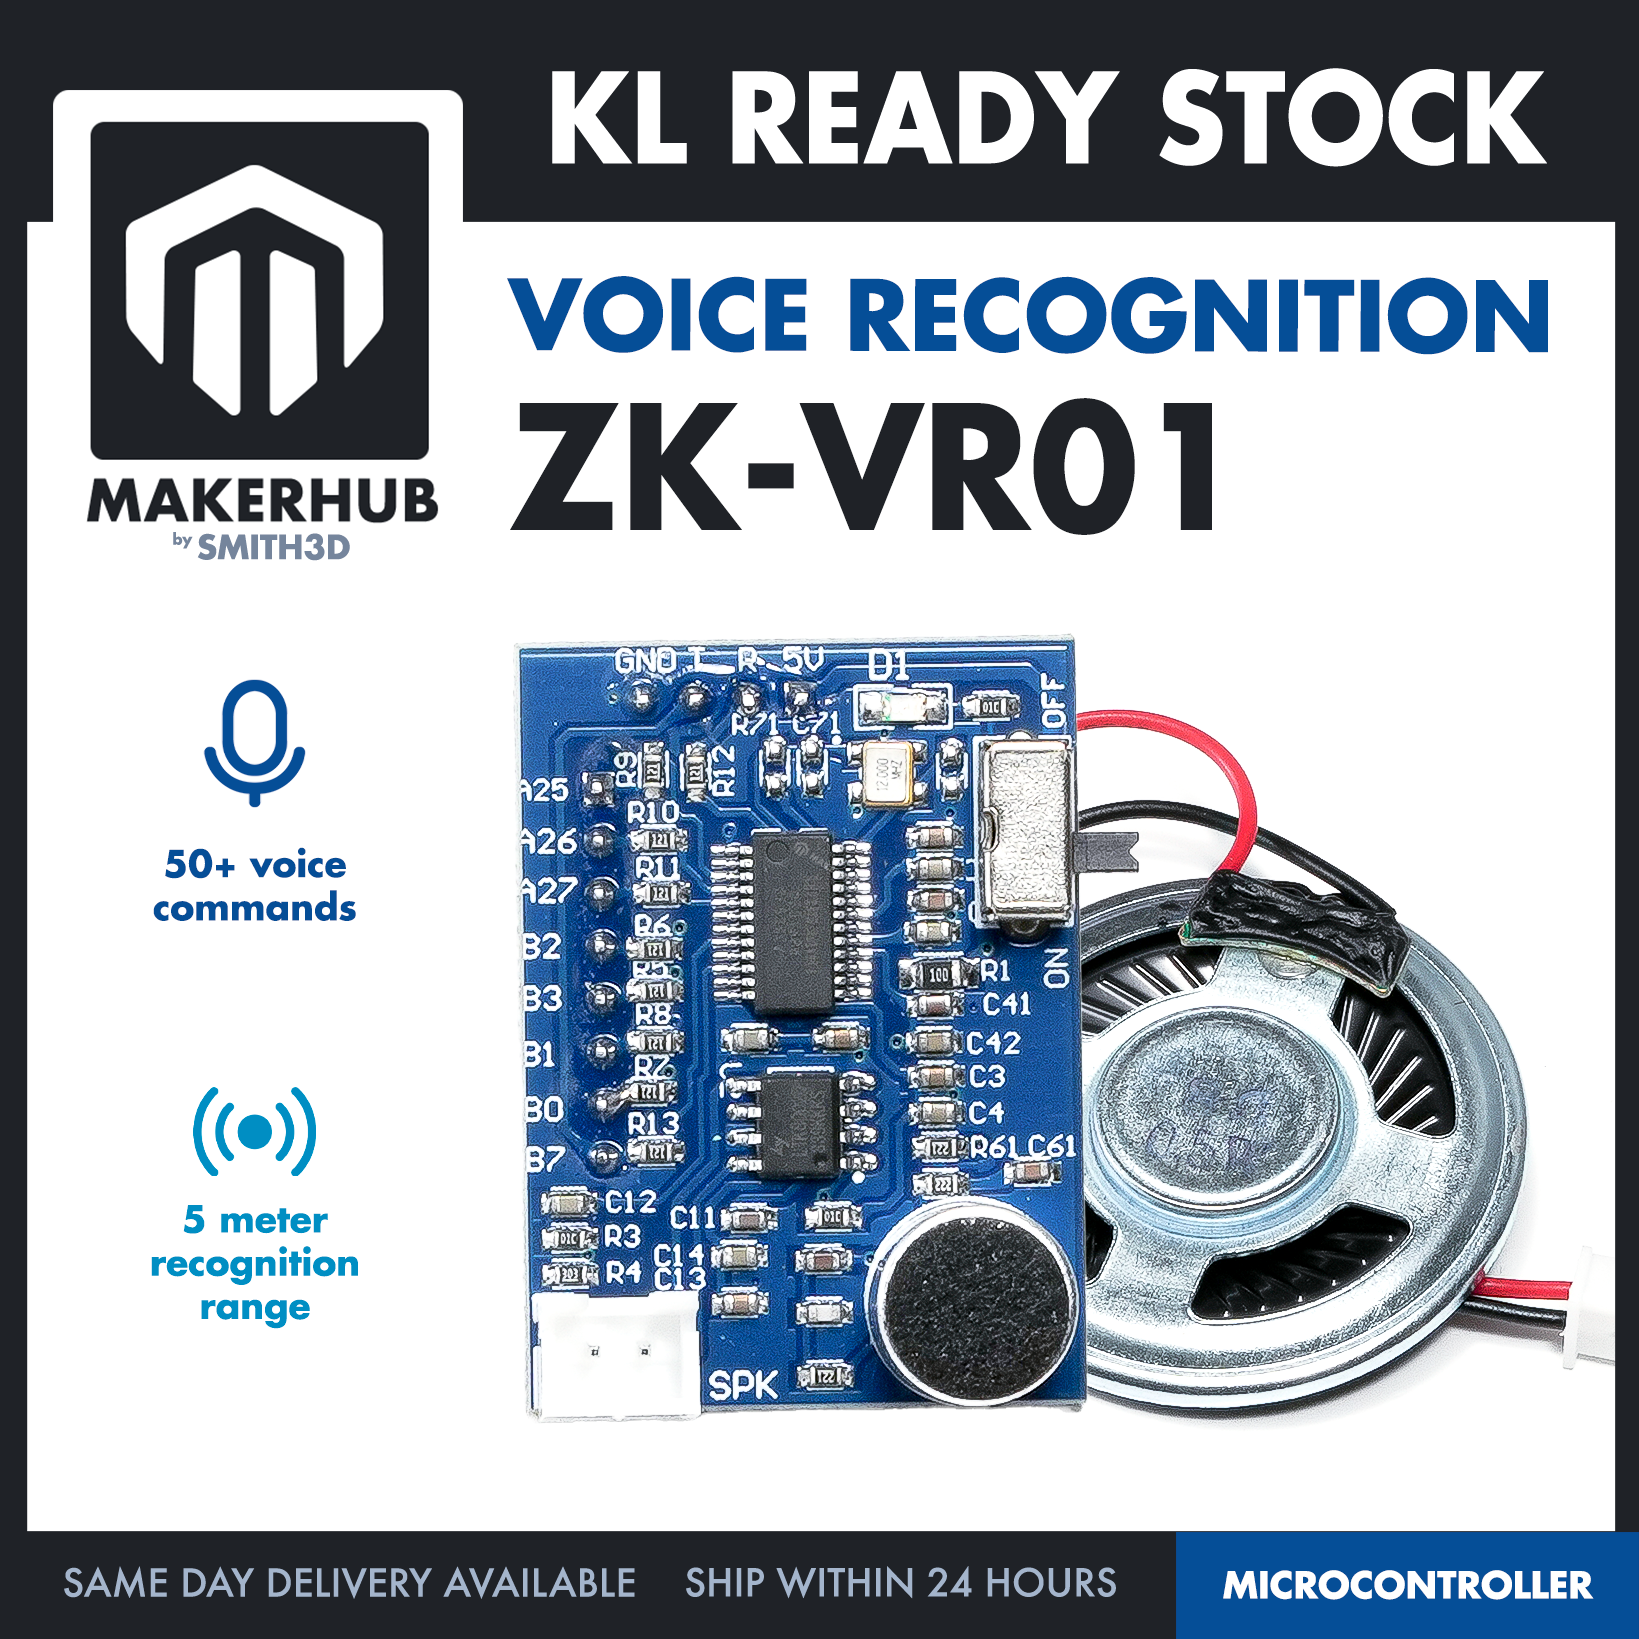 ZK-VR01 VOICE RECOGNITION MODULE